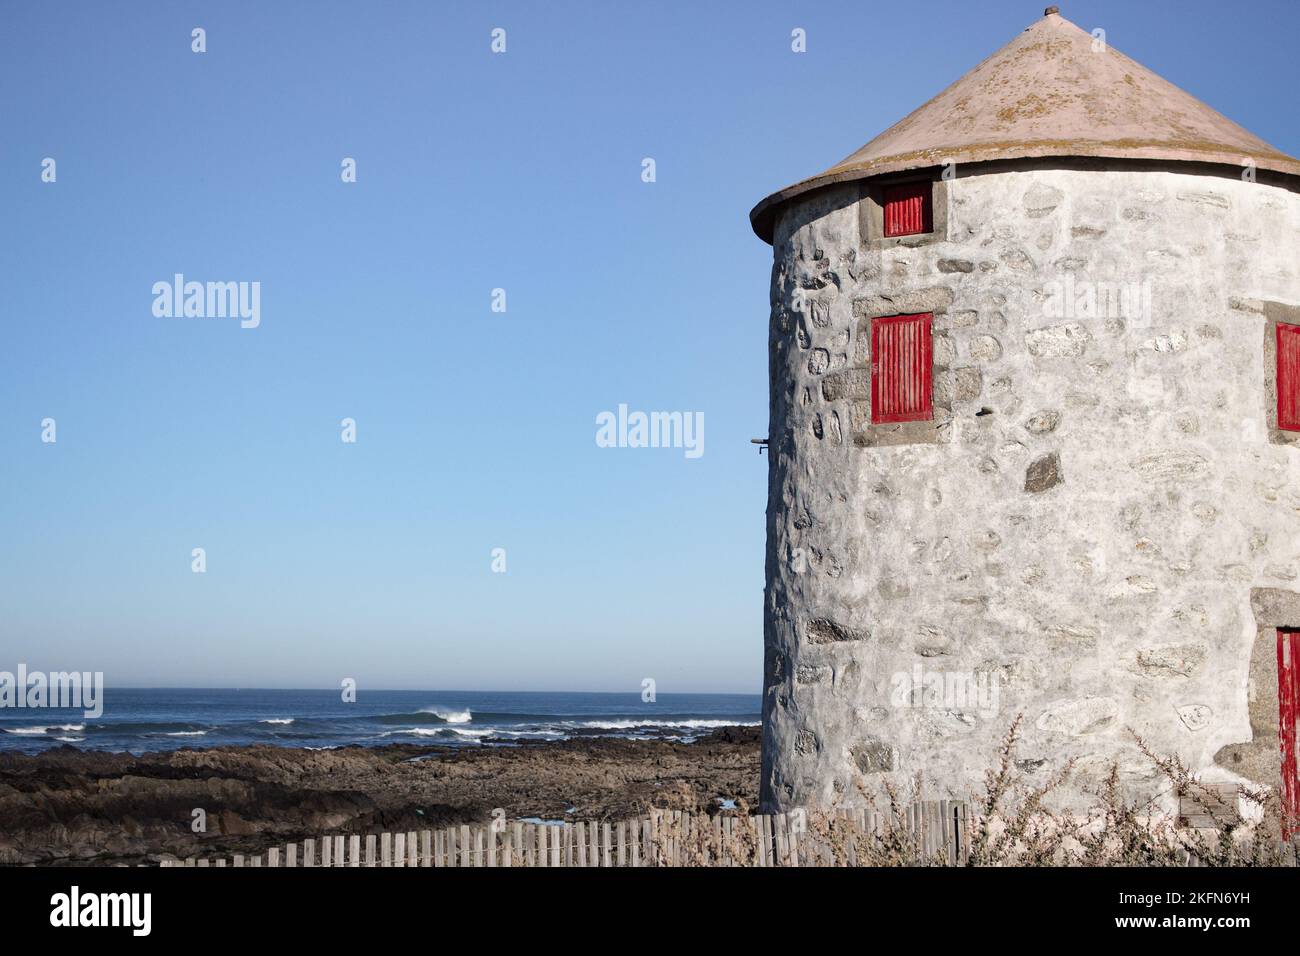 Ancien phare abandonné avec porte rouge fermée et fenêtres sur la côte atlantique de l'océan, Portugal. Phare contre ciel bleu avec espace de copie. Banque D'Images